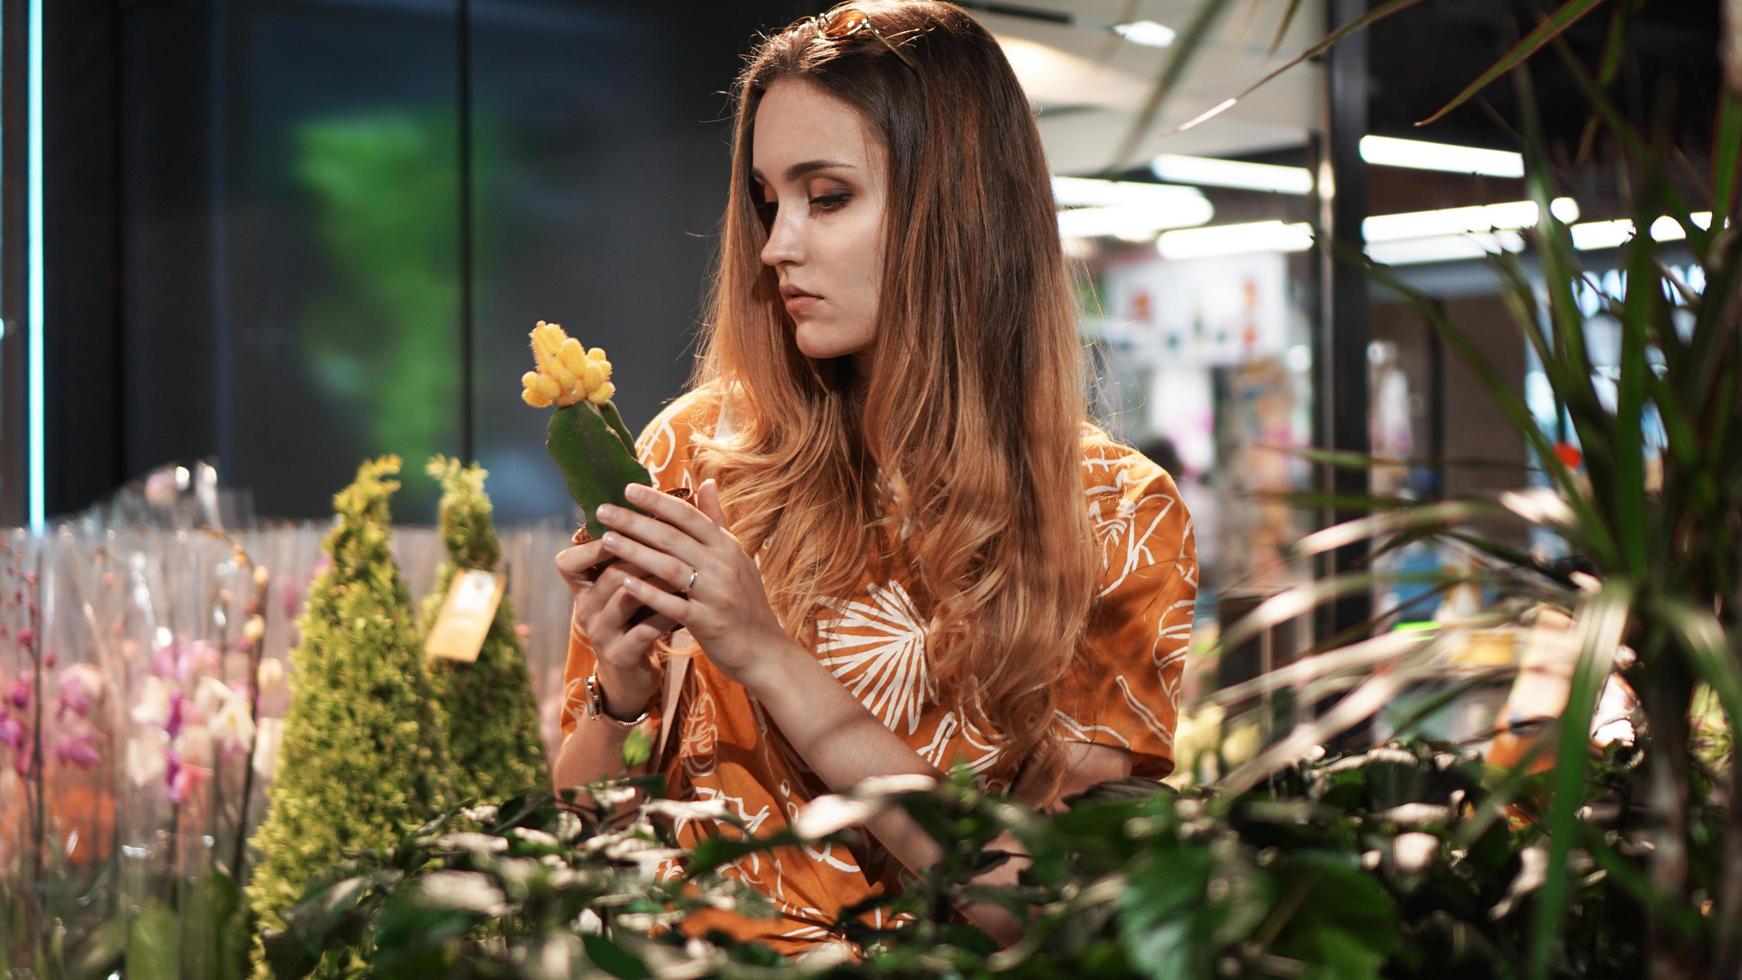 jonge vrouw die bloemen koopt in een tuincentrum foto